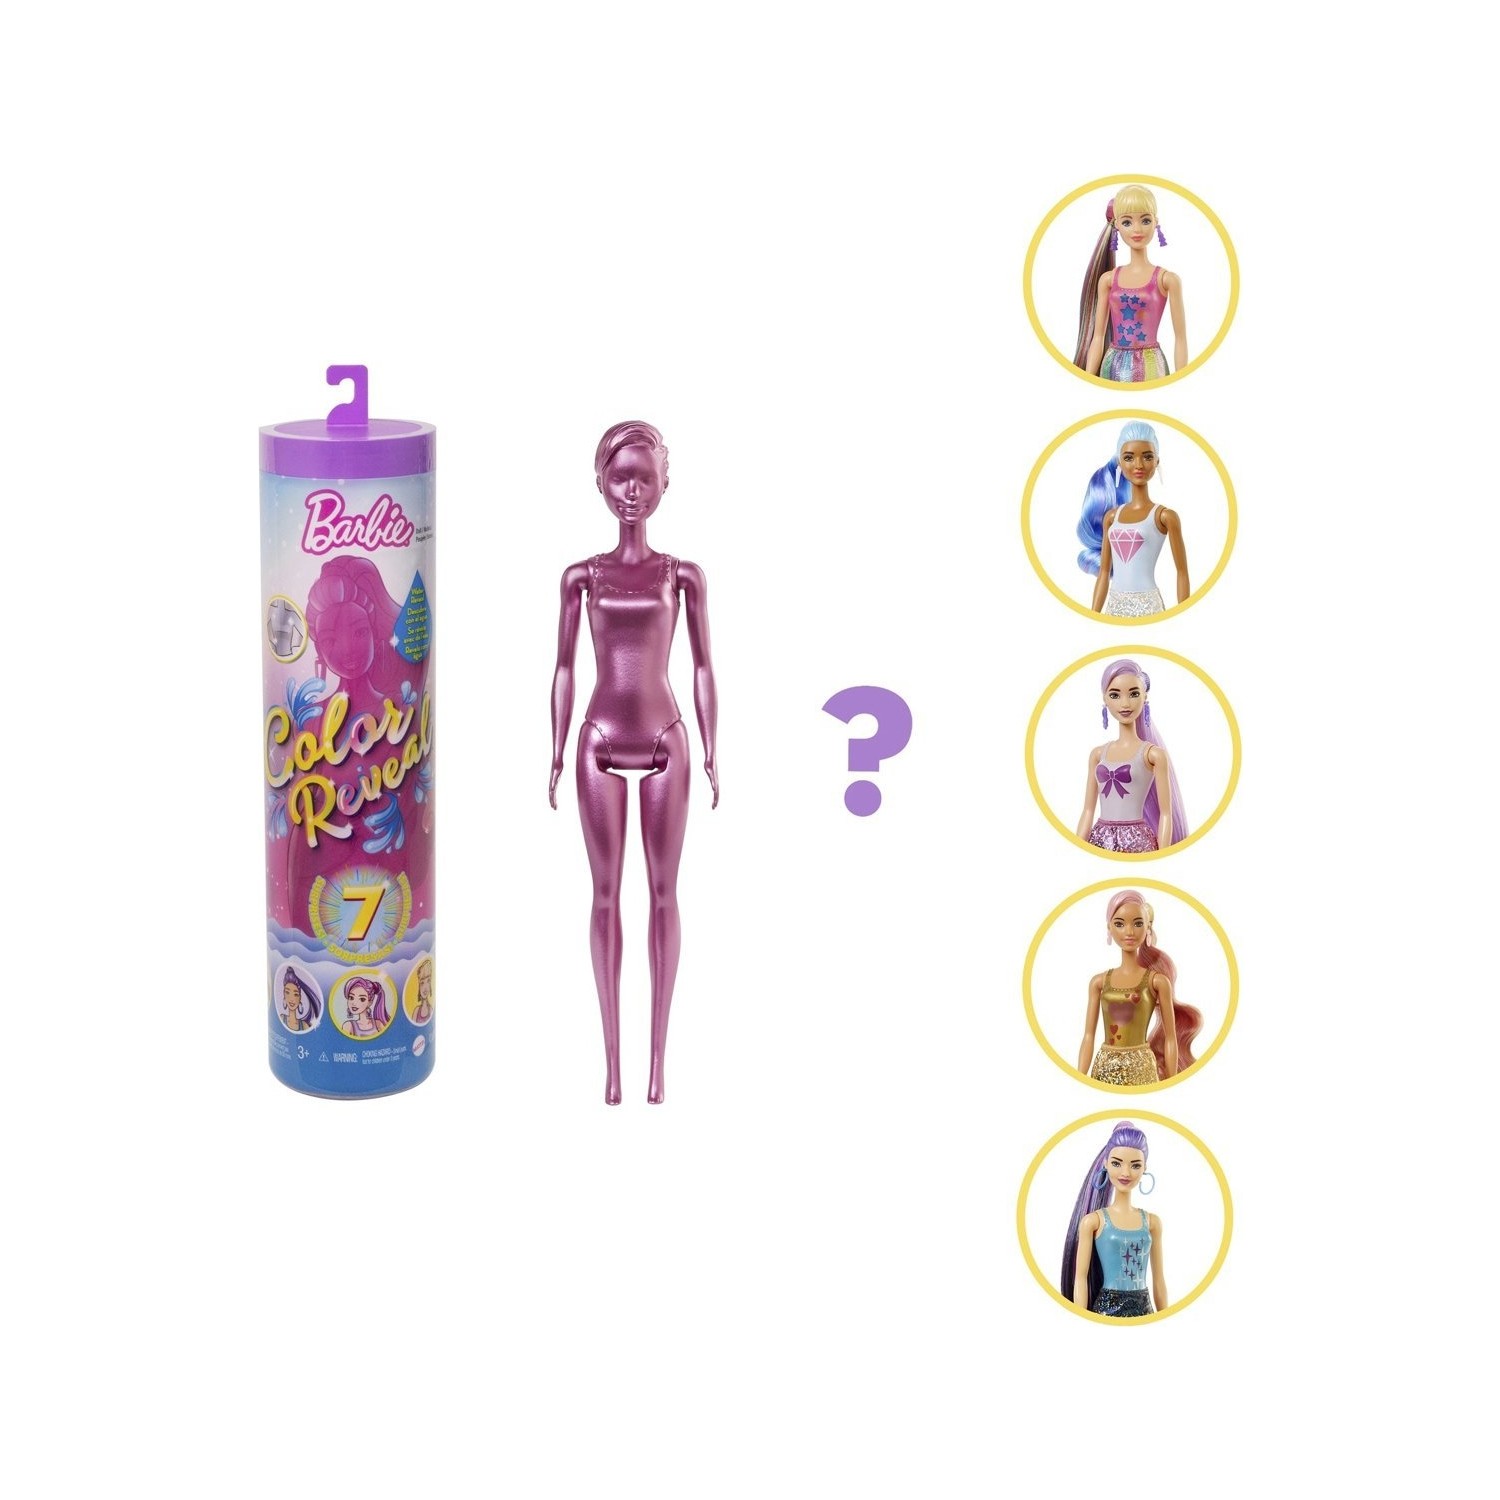 Кукла Barbie Barbie Color Reveal GWC55 кукла сюрприз barbie color reveal totally denim series hjx55 разноцветный